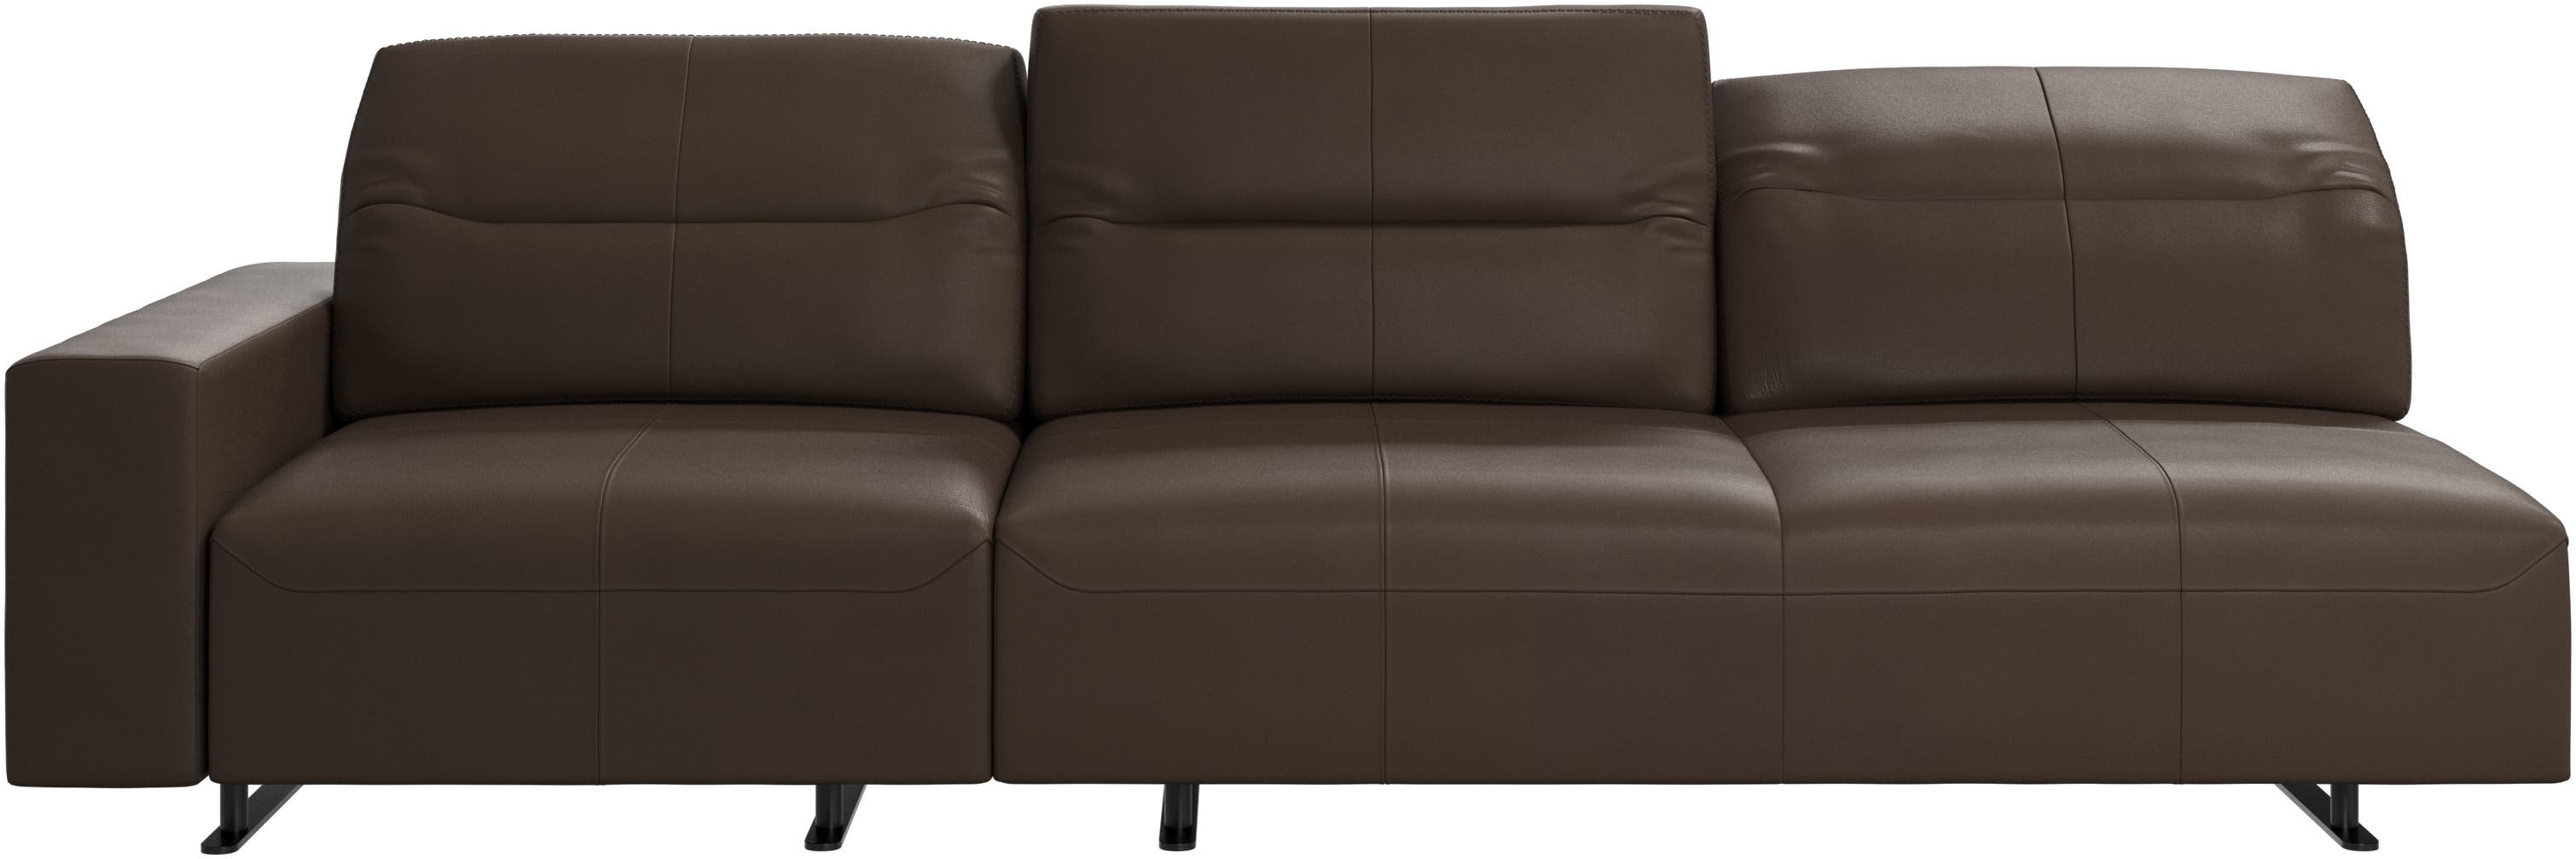 Hampton Sofa mit verstellbarer Rückenlehne und Stauraum auf der linken Seite